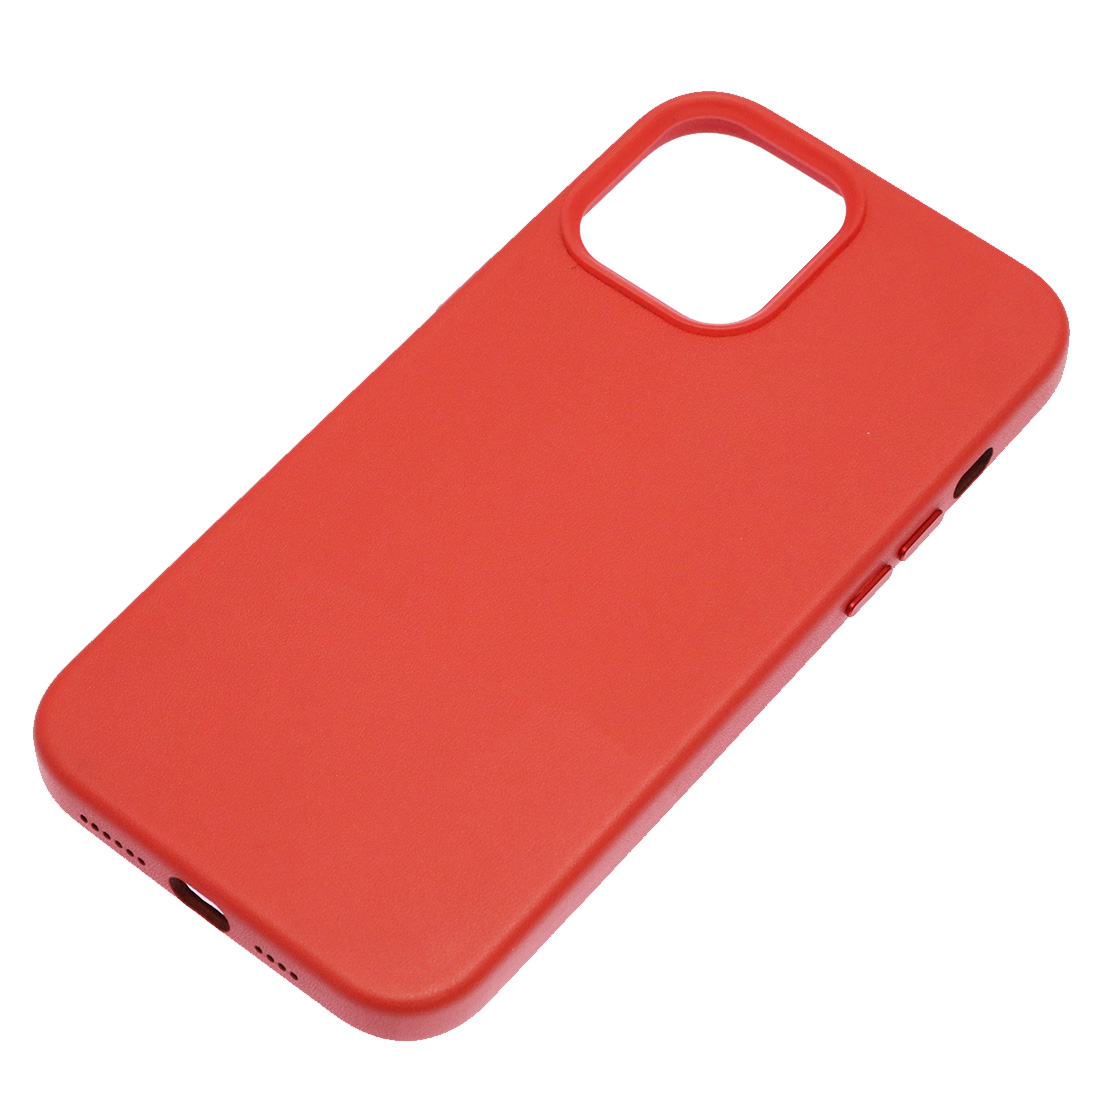 Чехол накладка Leather Case для APPLE iPhone 12 Pro Max, силикон, бархат, экокожа, цвет красный